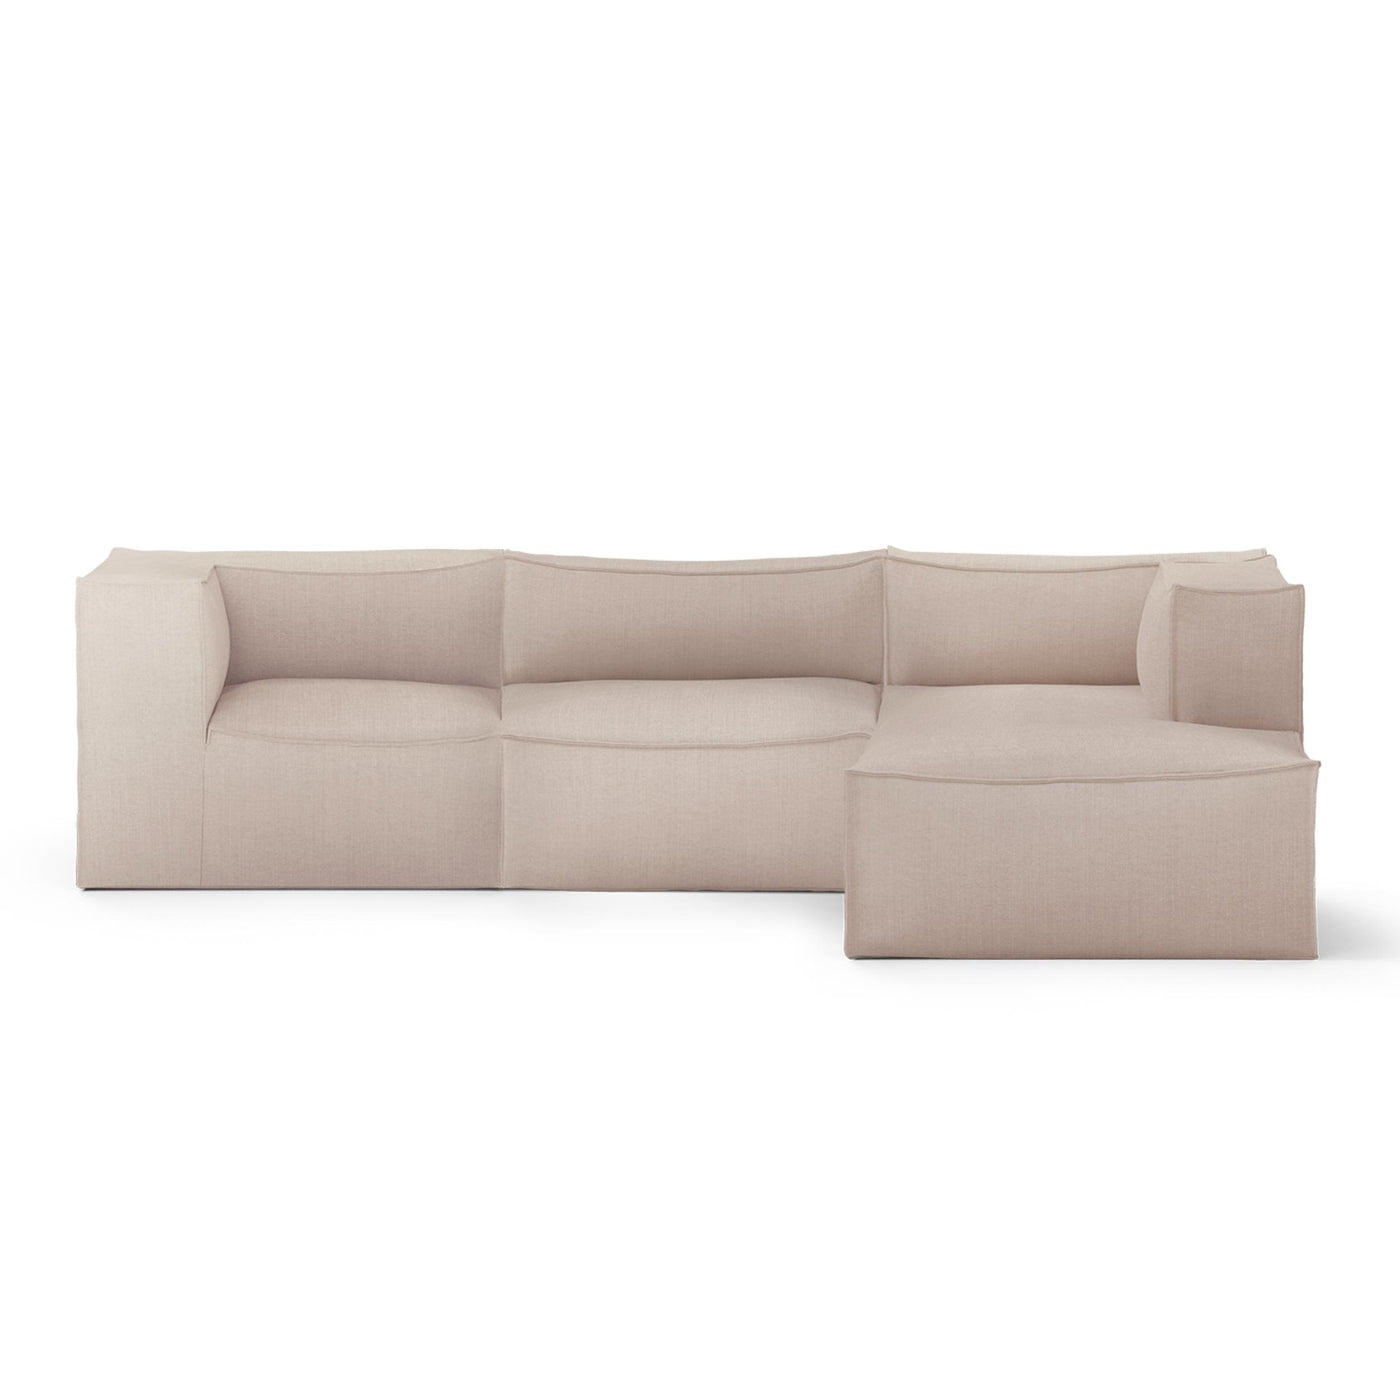 ferm LIVING Catena 3 seater modular sofa. Configuration 2. #colour_linara-sand